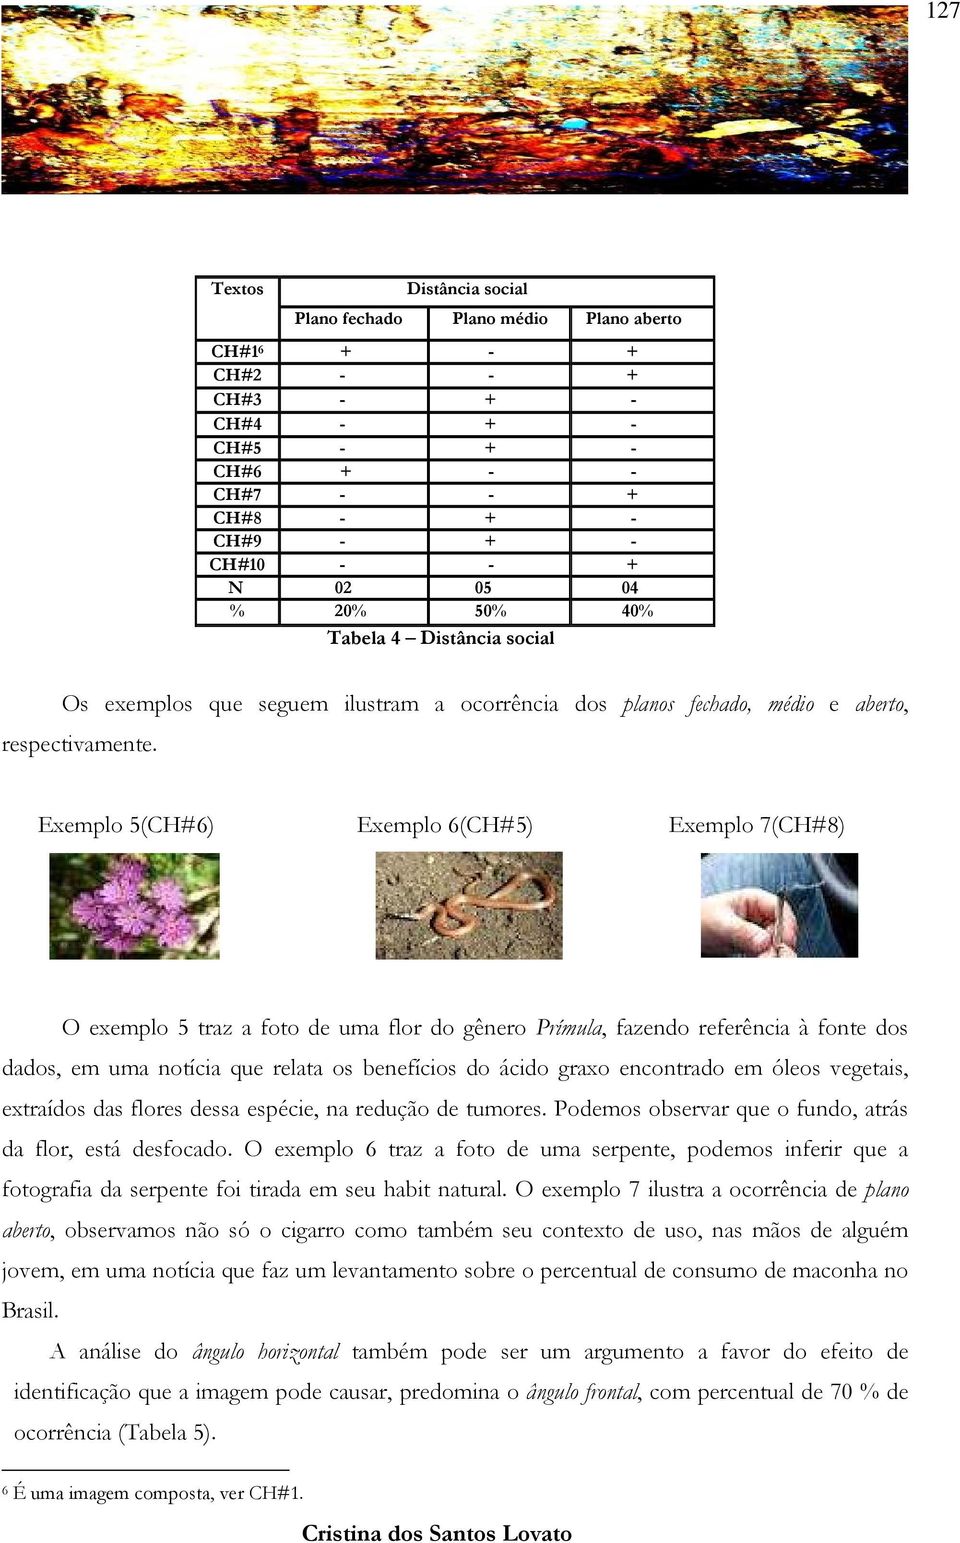 Exemplo 5(CH#6) Exemplo 6(CH#5) Exemplo 7(CH#8) O exemplo 5 traz a foto de uma flor do gênero Prímula, fazendo referência à fonte dos dados, em uma notícia que relata os benefícios do ácido graxo